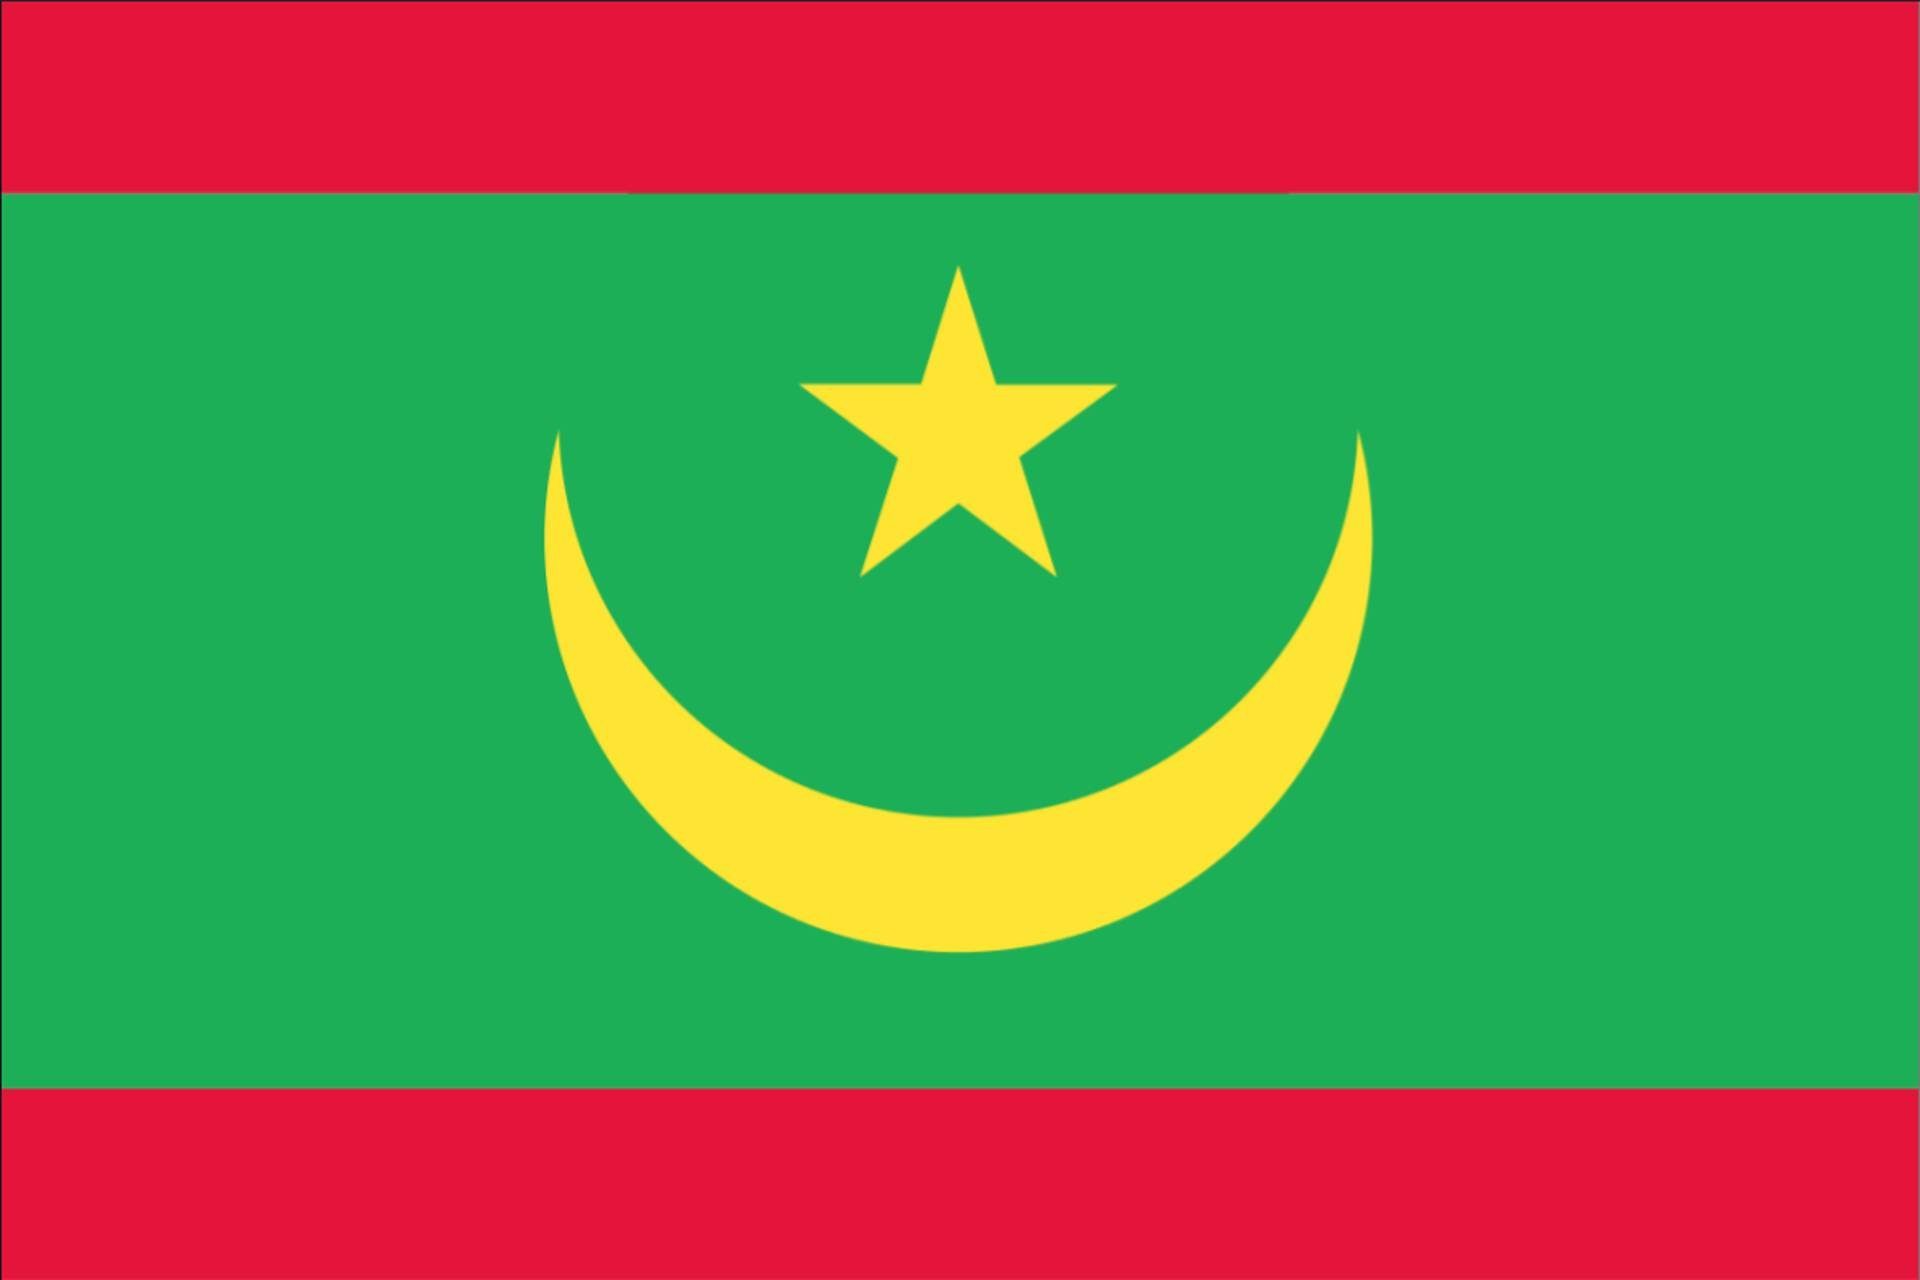 Mauretanien g/m² 80 Flagge flaggenmeer